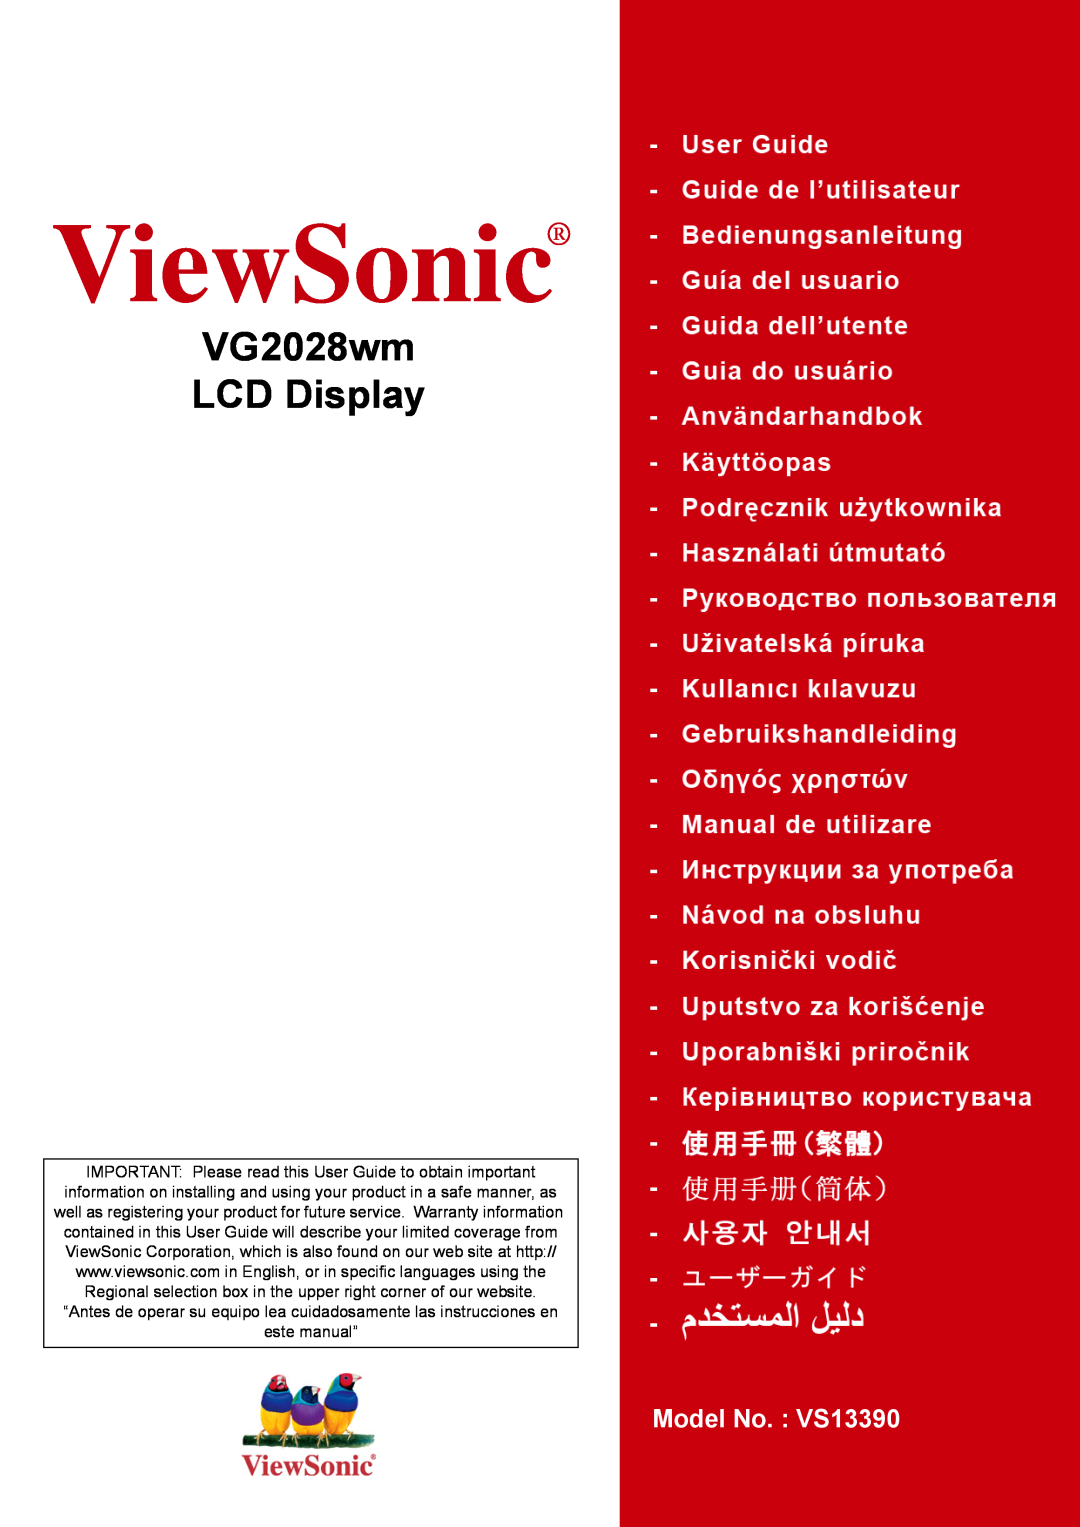 ViewSonic VG2028WM warranty ViewSonic, VG2028wm LCD Display, Model No. VS13390 